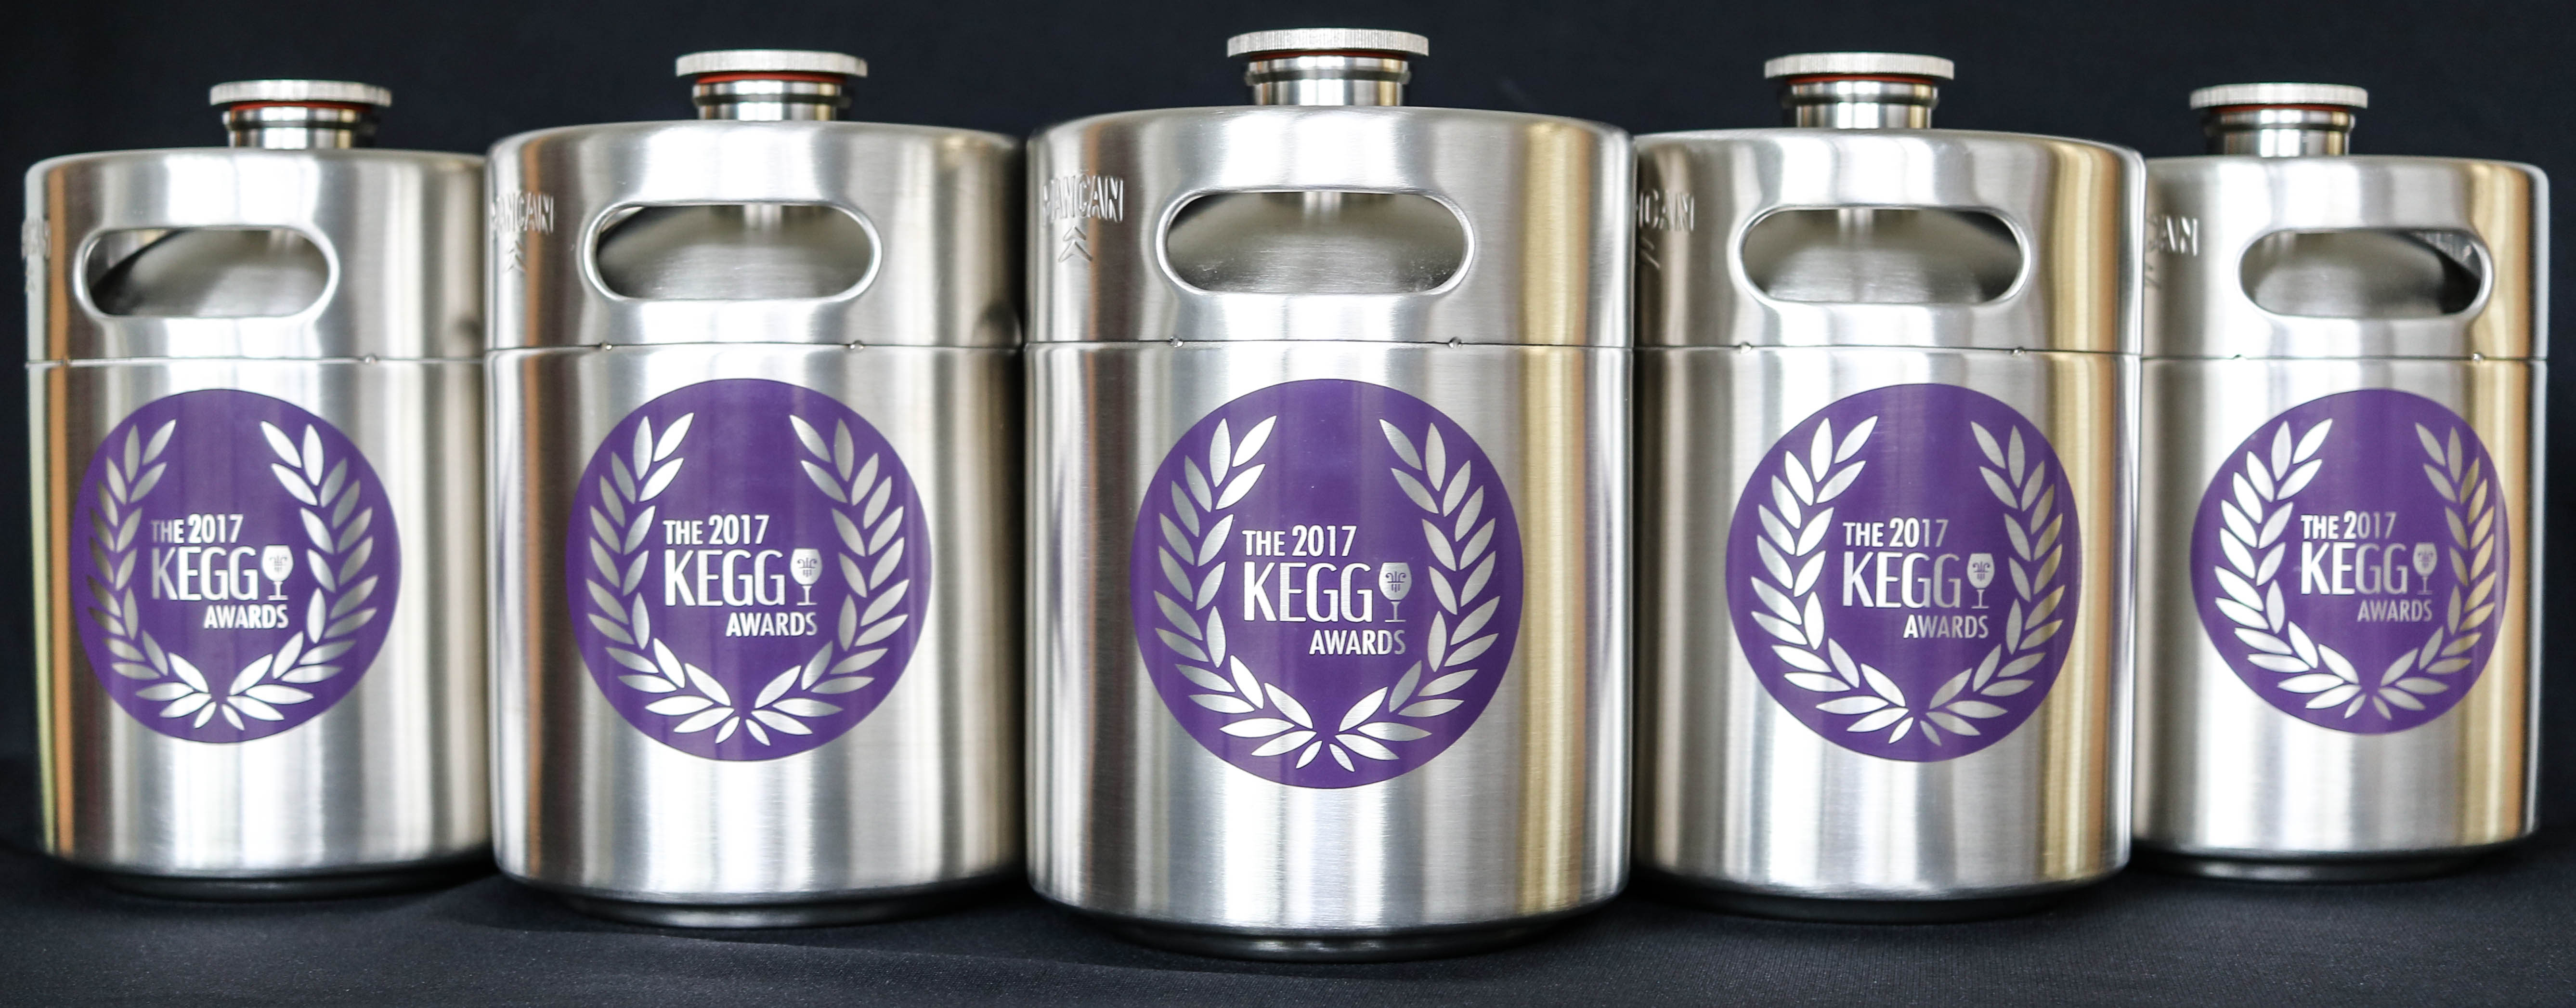 Free Flow Wines - 2017 KEGGY Awards Trophies